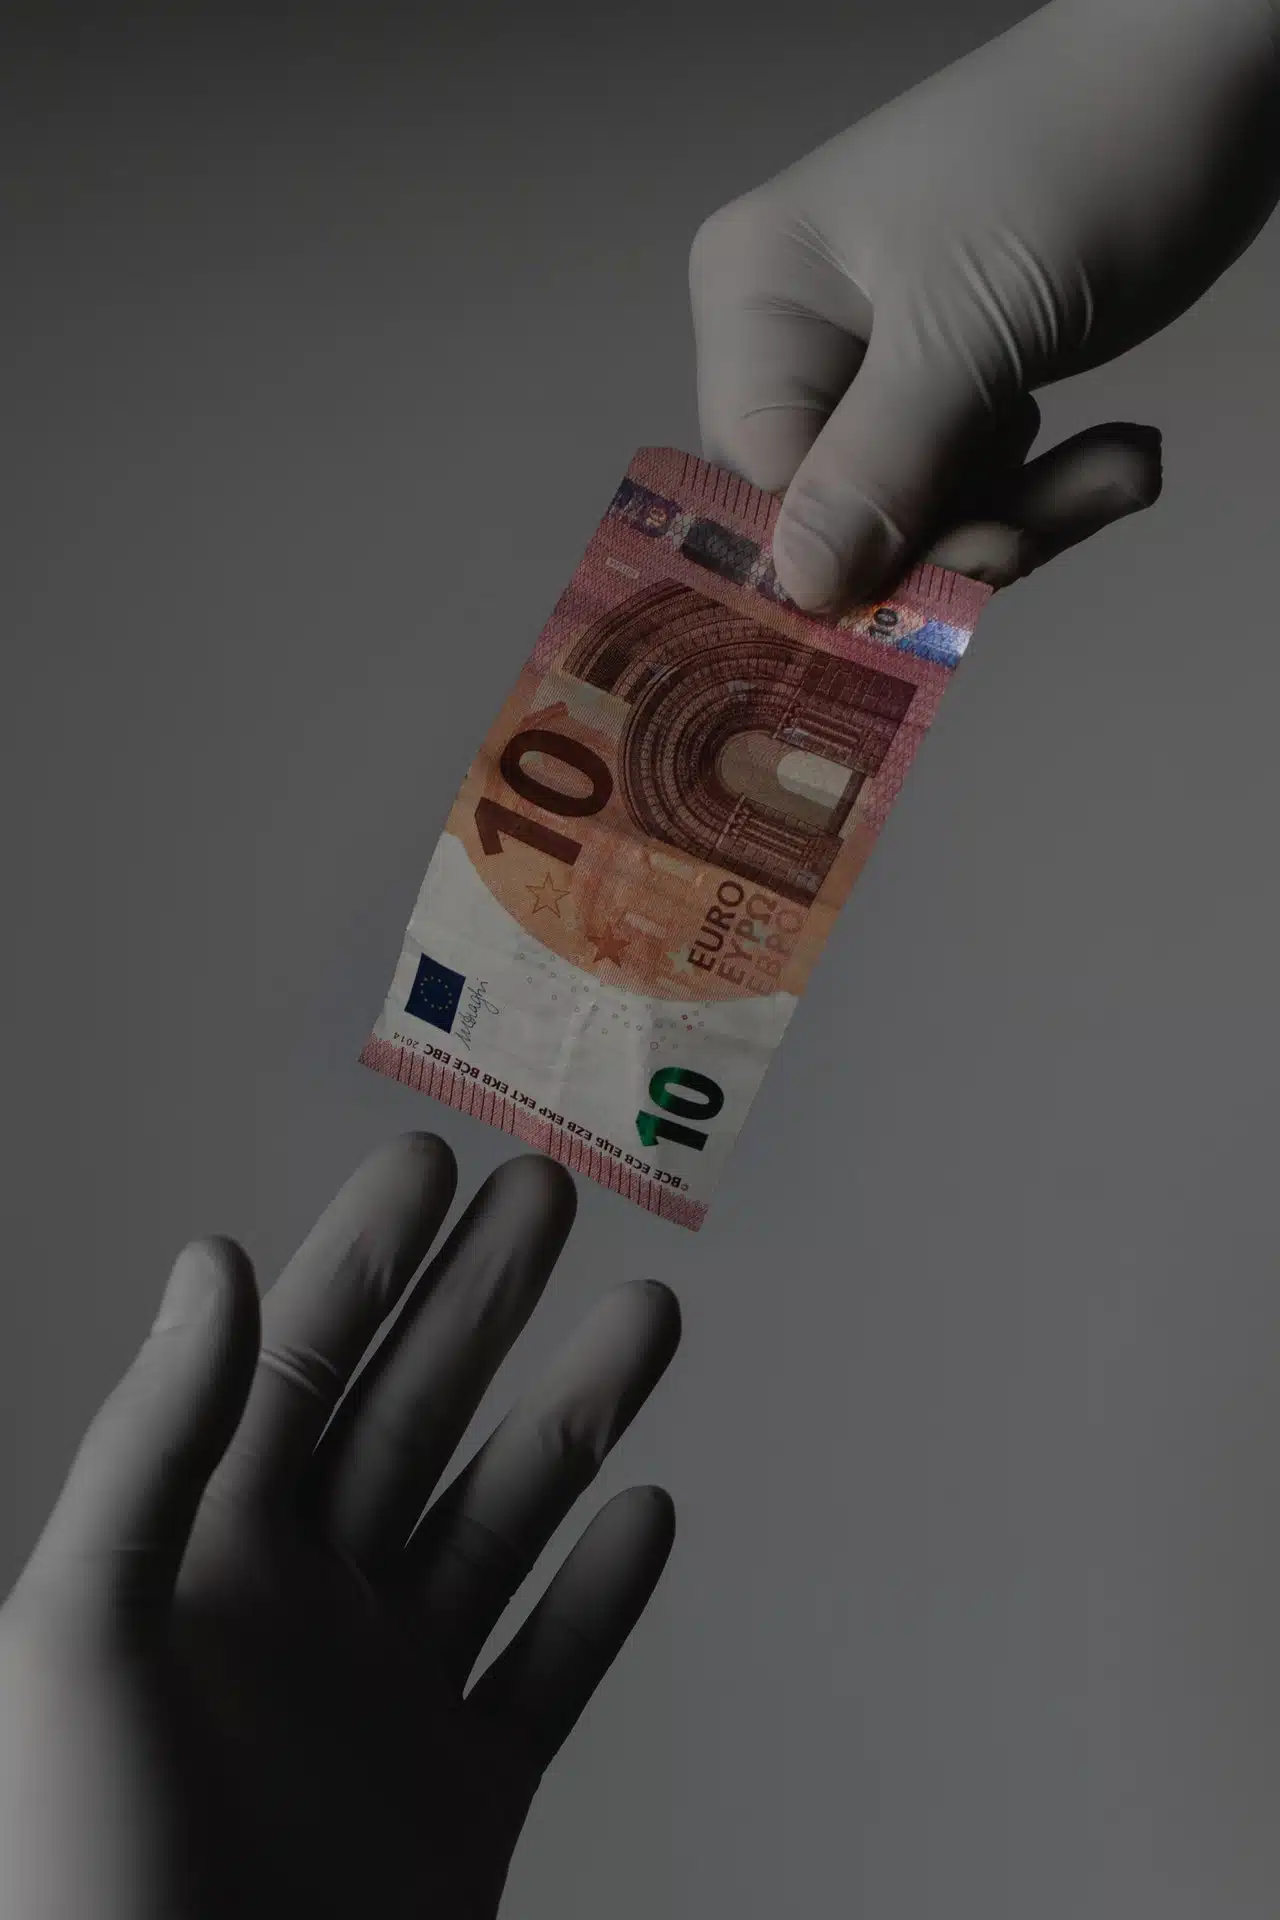 mani che indossano guanti per profilassi da contagio Covid19 si passano una banconota da 10 euro